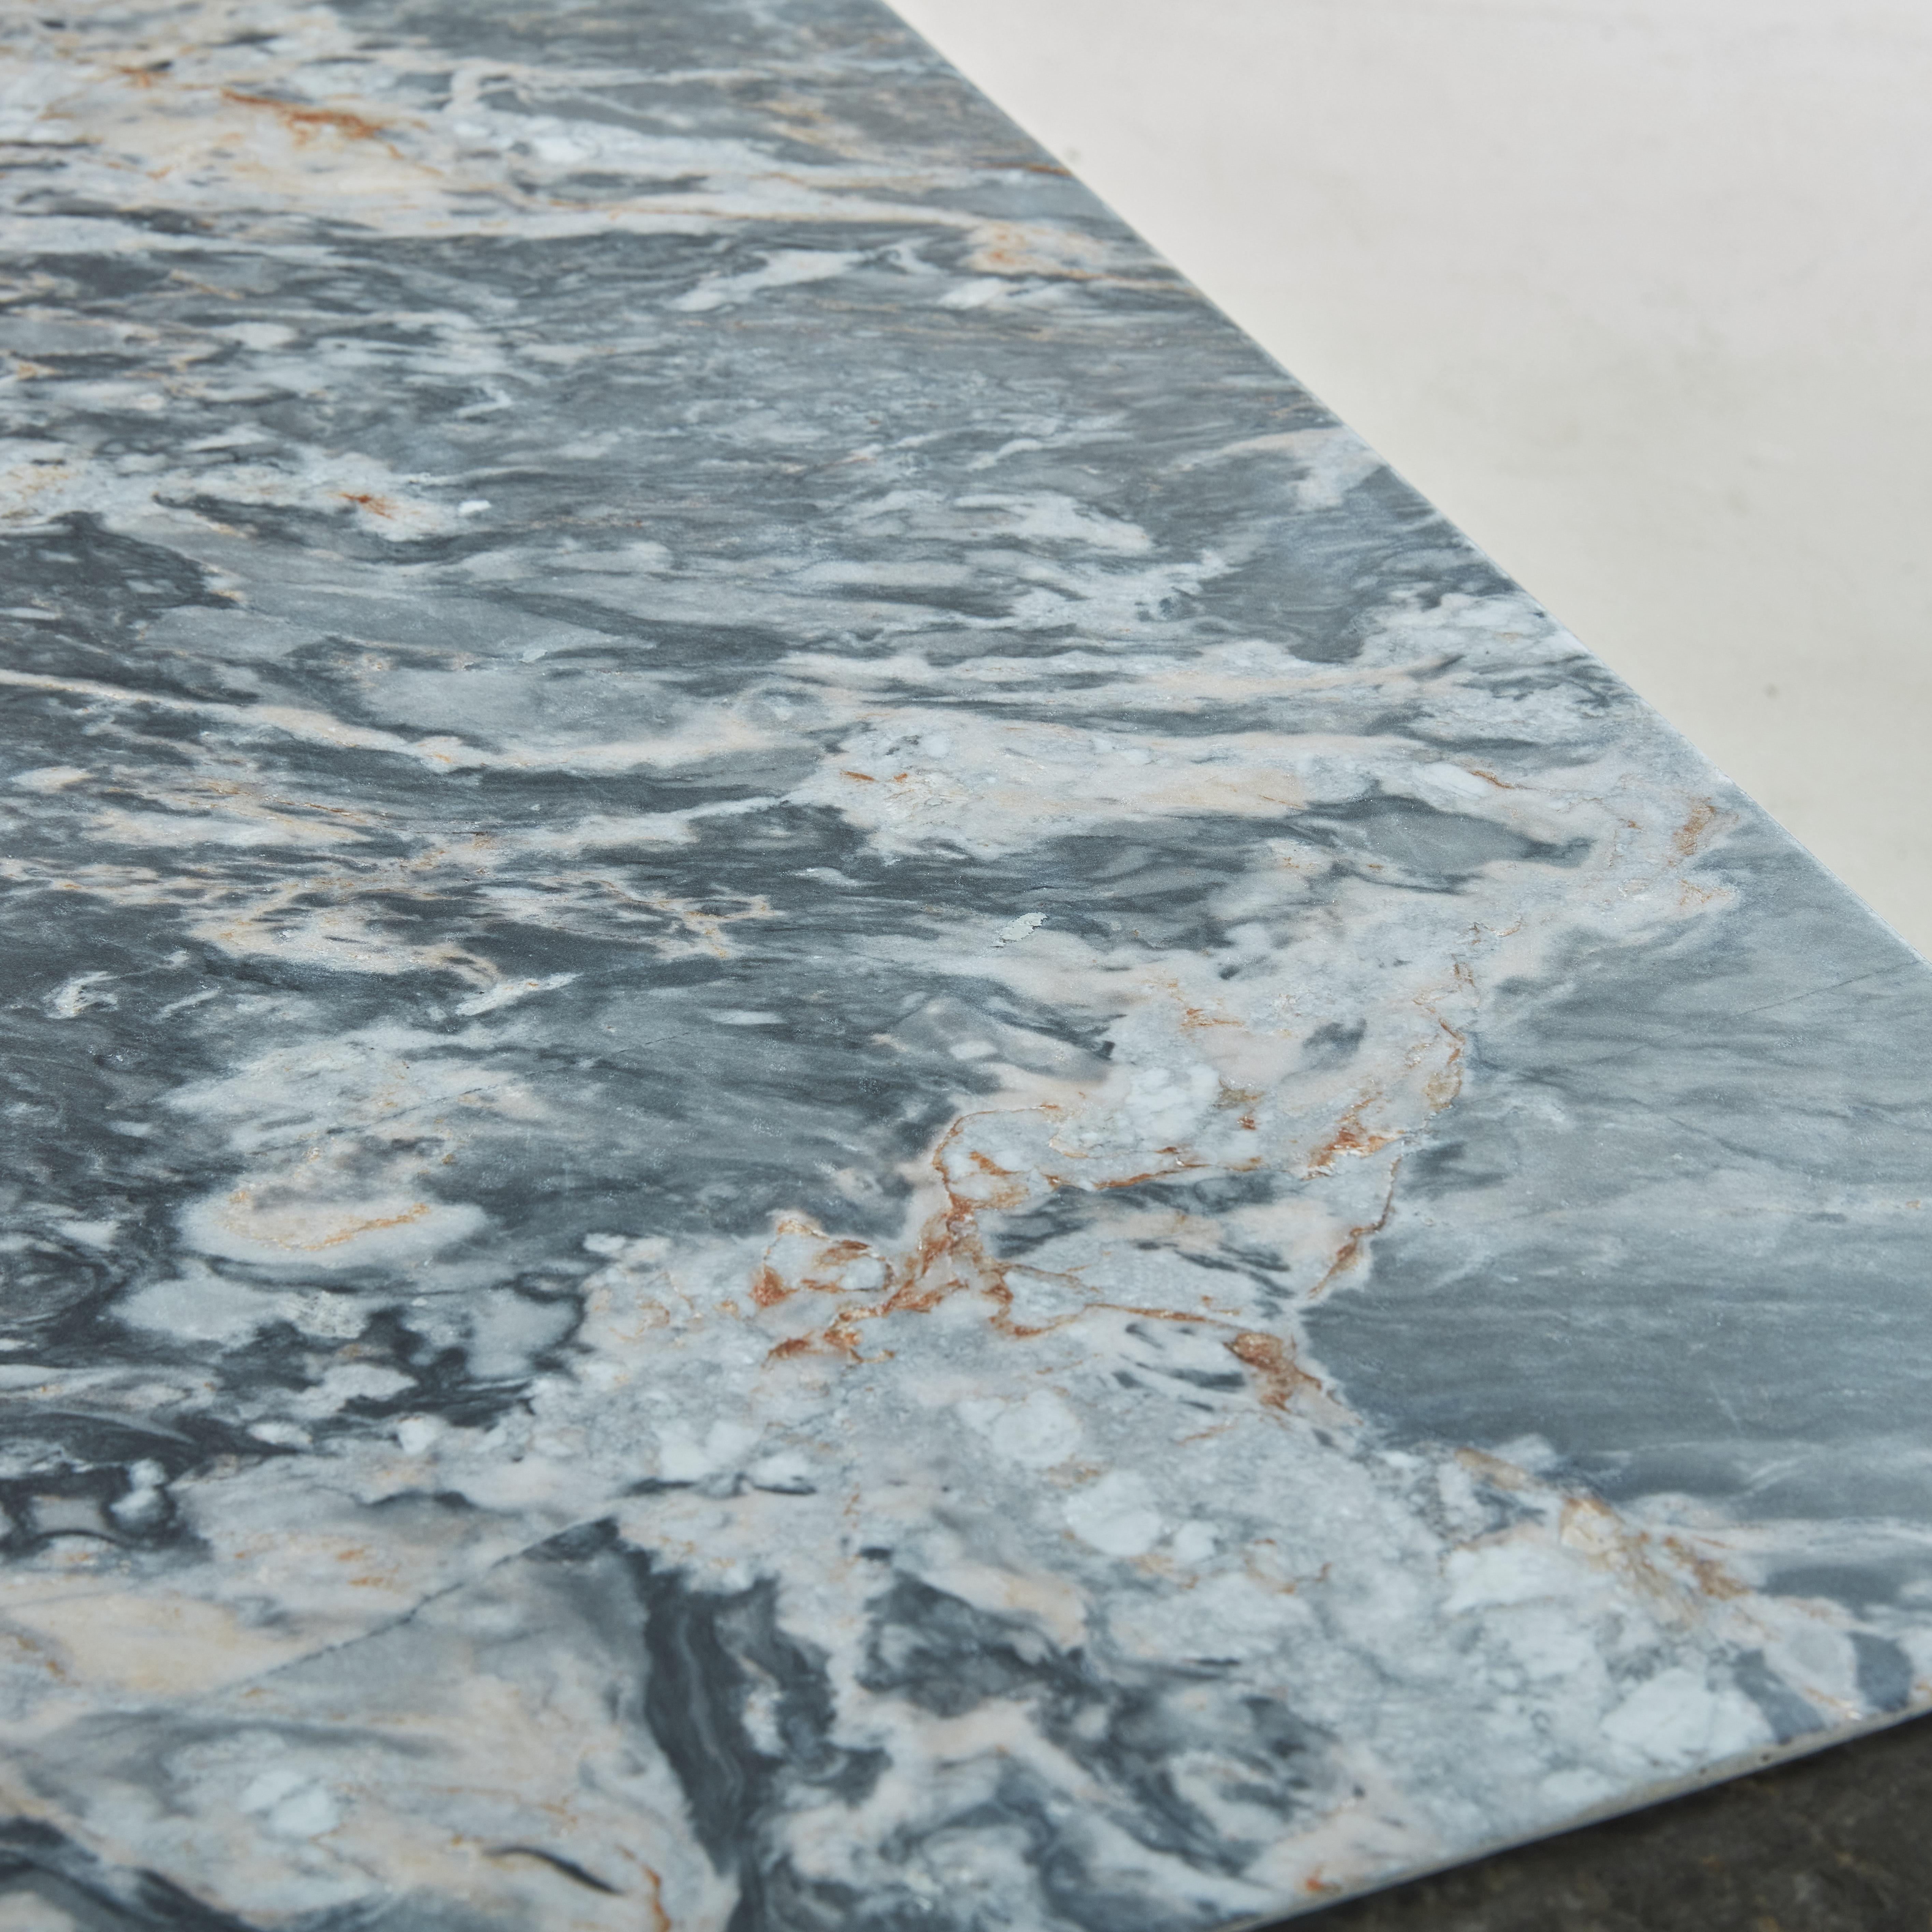 Remarquable table basse des années 1970 entièrement fabriquée en marbre italien Cipollino aux magnifiques teintes grises, beiges et roses. Il présente une finition adoucie et une silhouette minimaliste, qui est mise en valeur par le veinage unique